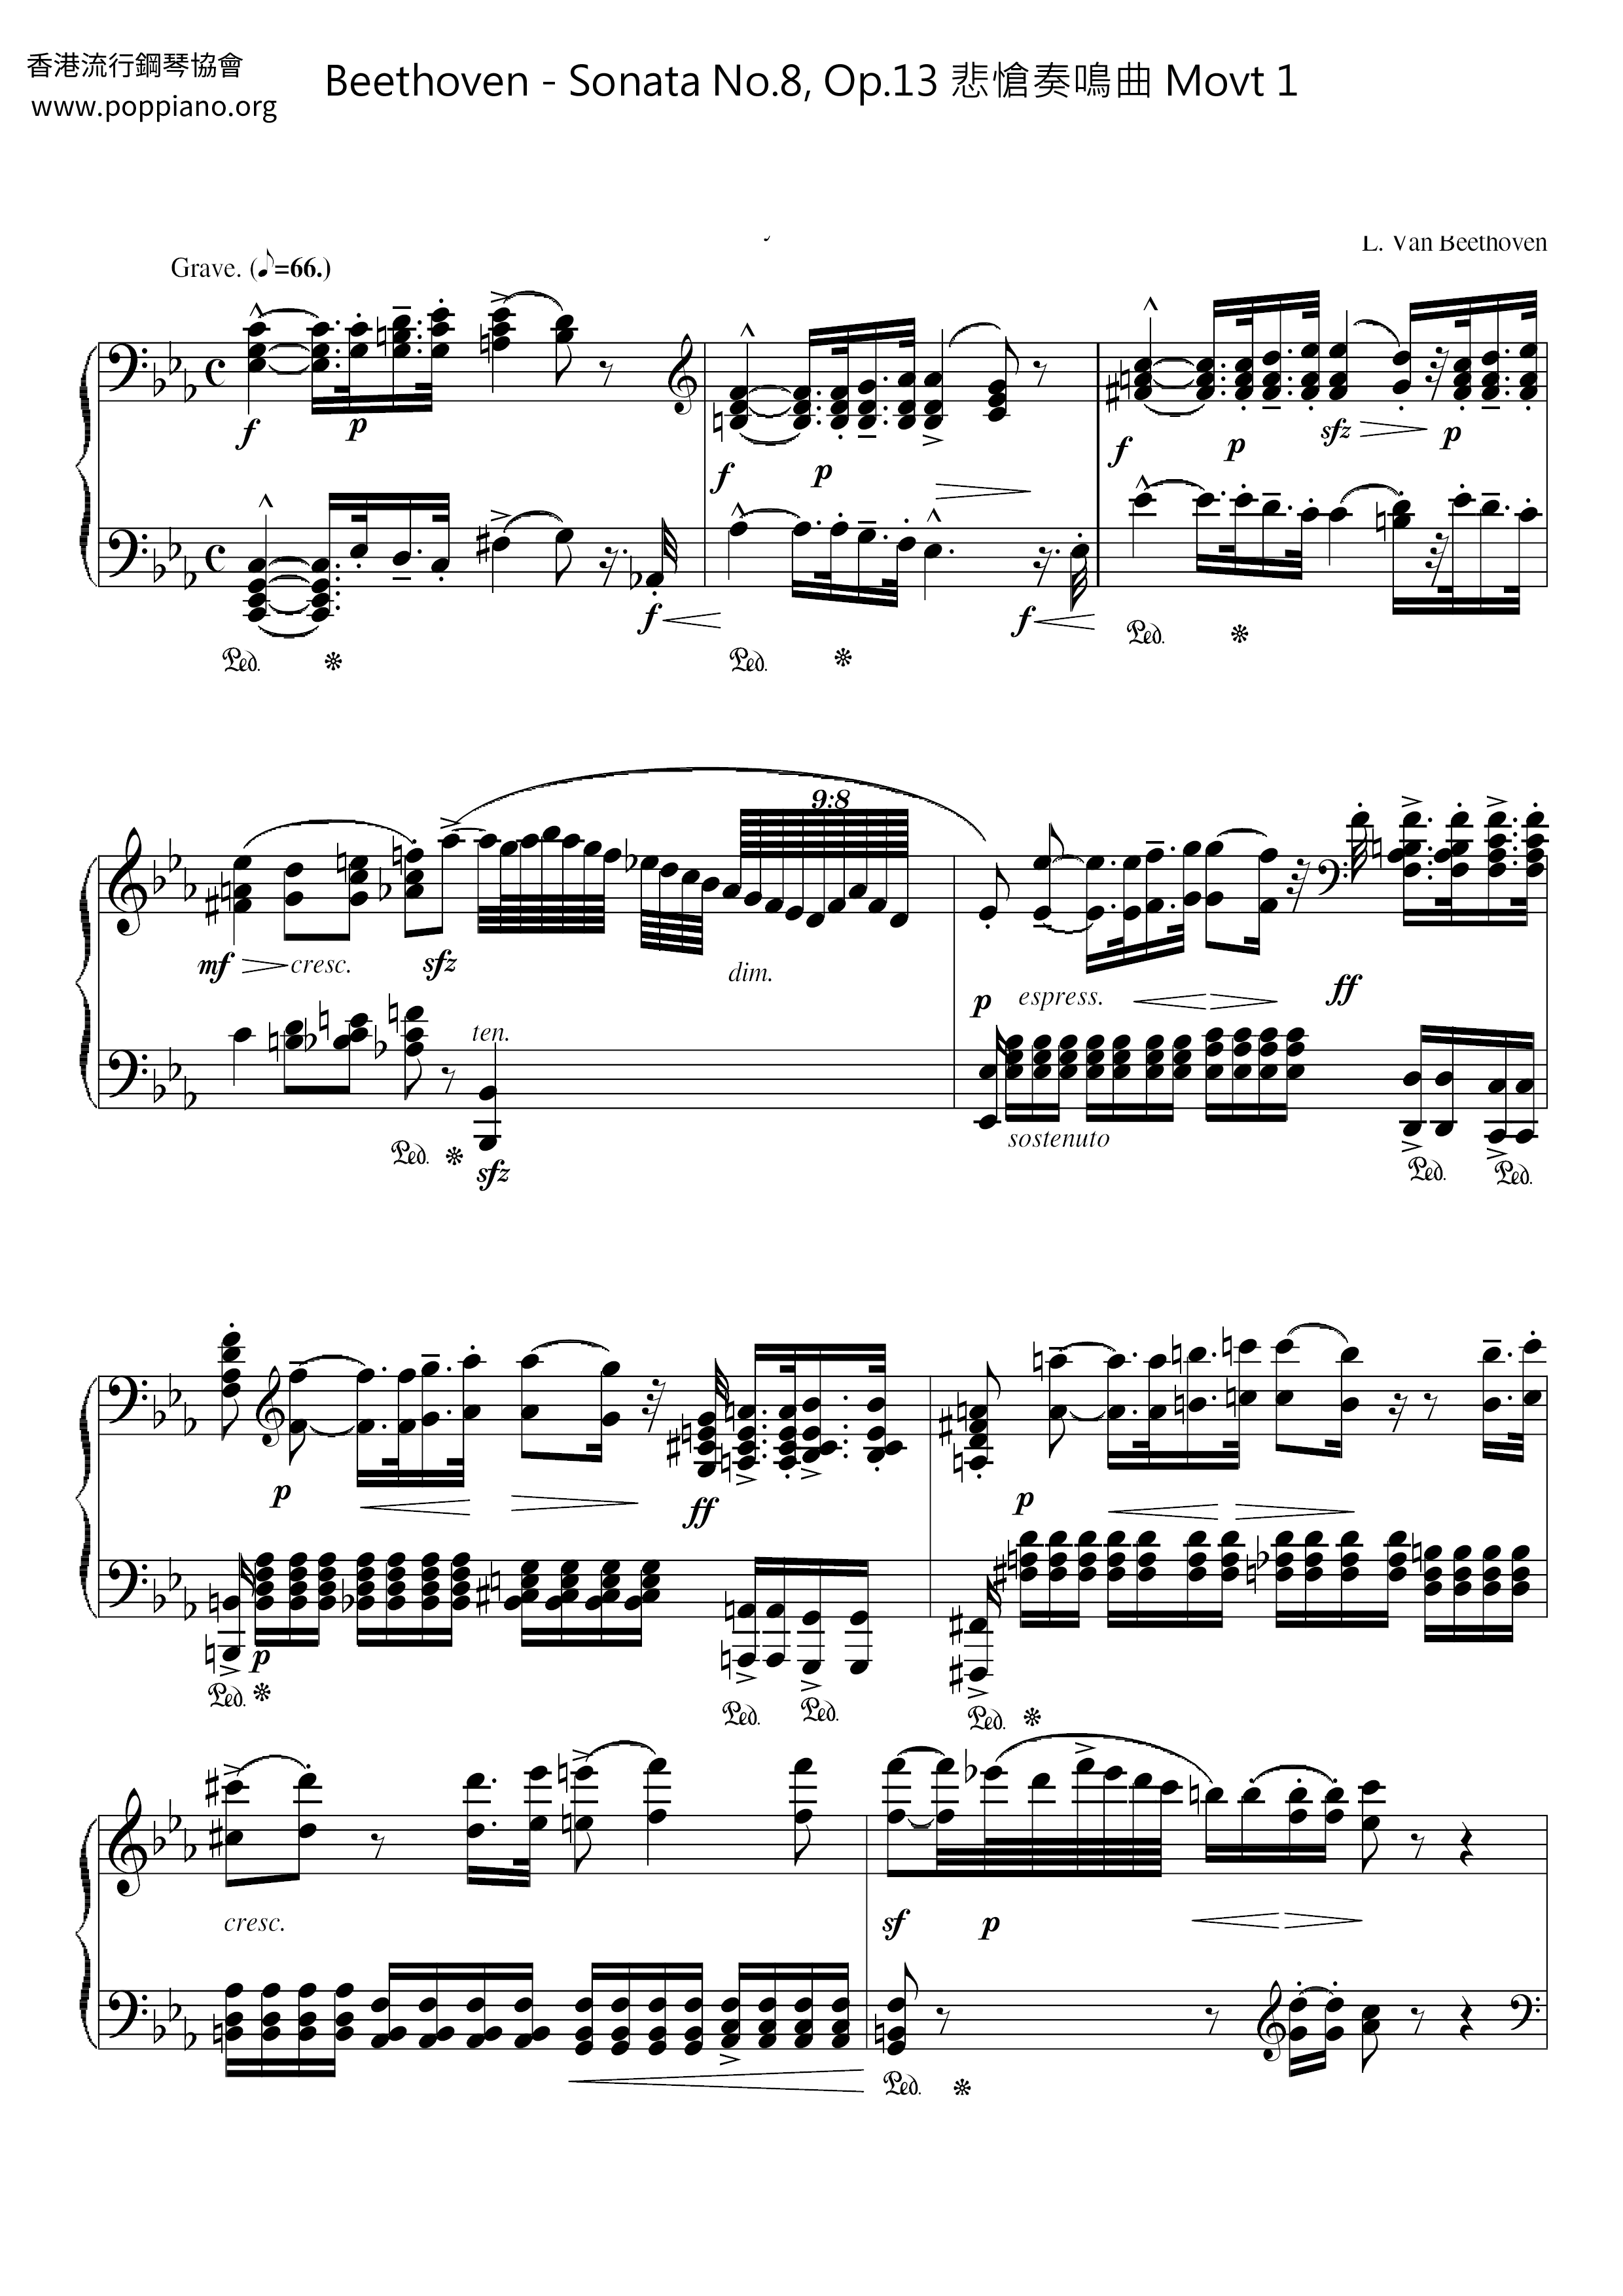 Sonata No. 8, Op. 13 悲愴奏鳴曲 Movt 1ピアノ譜